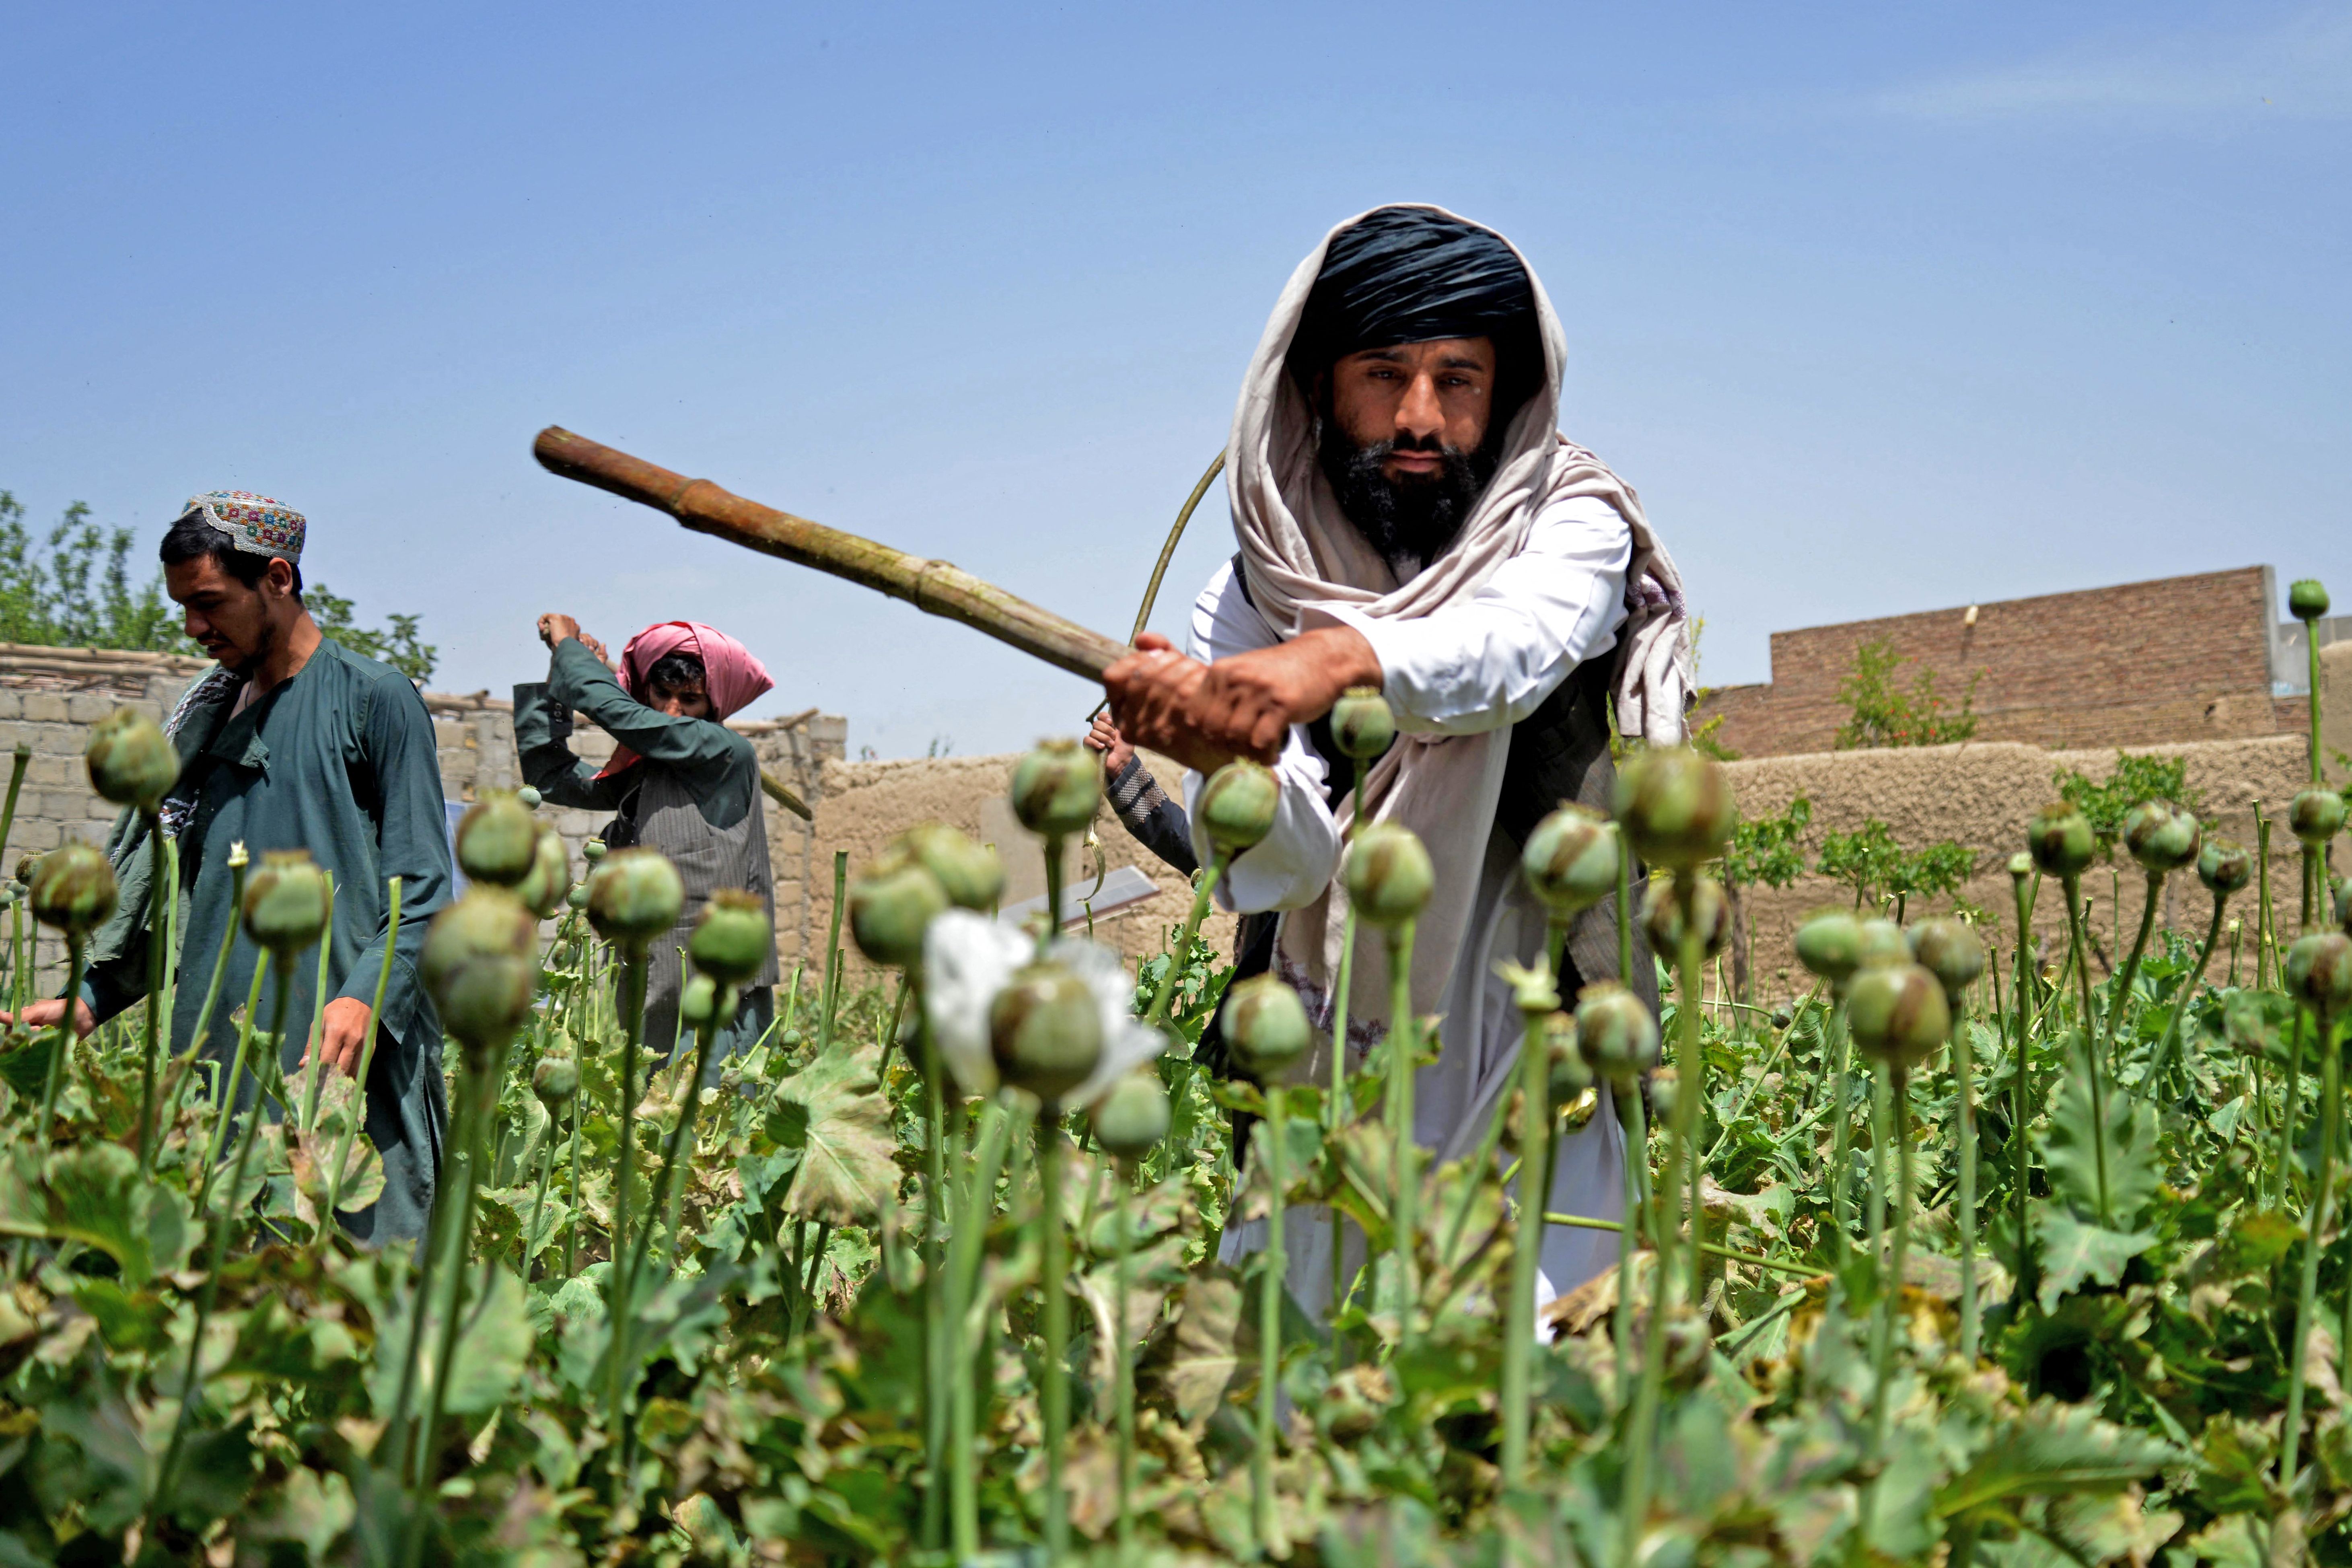 Männer in traditionellen afghanischen Gewändern schlagen mit Stöcken auf Mohnpflanzen ein